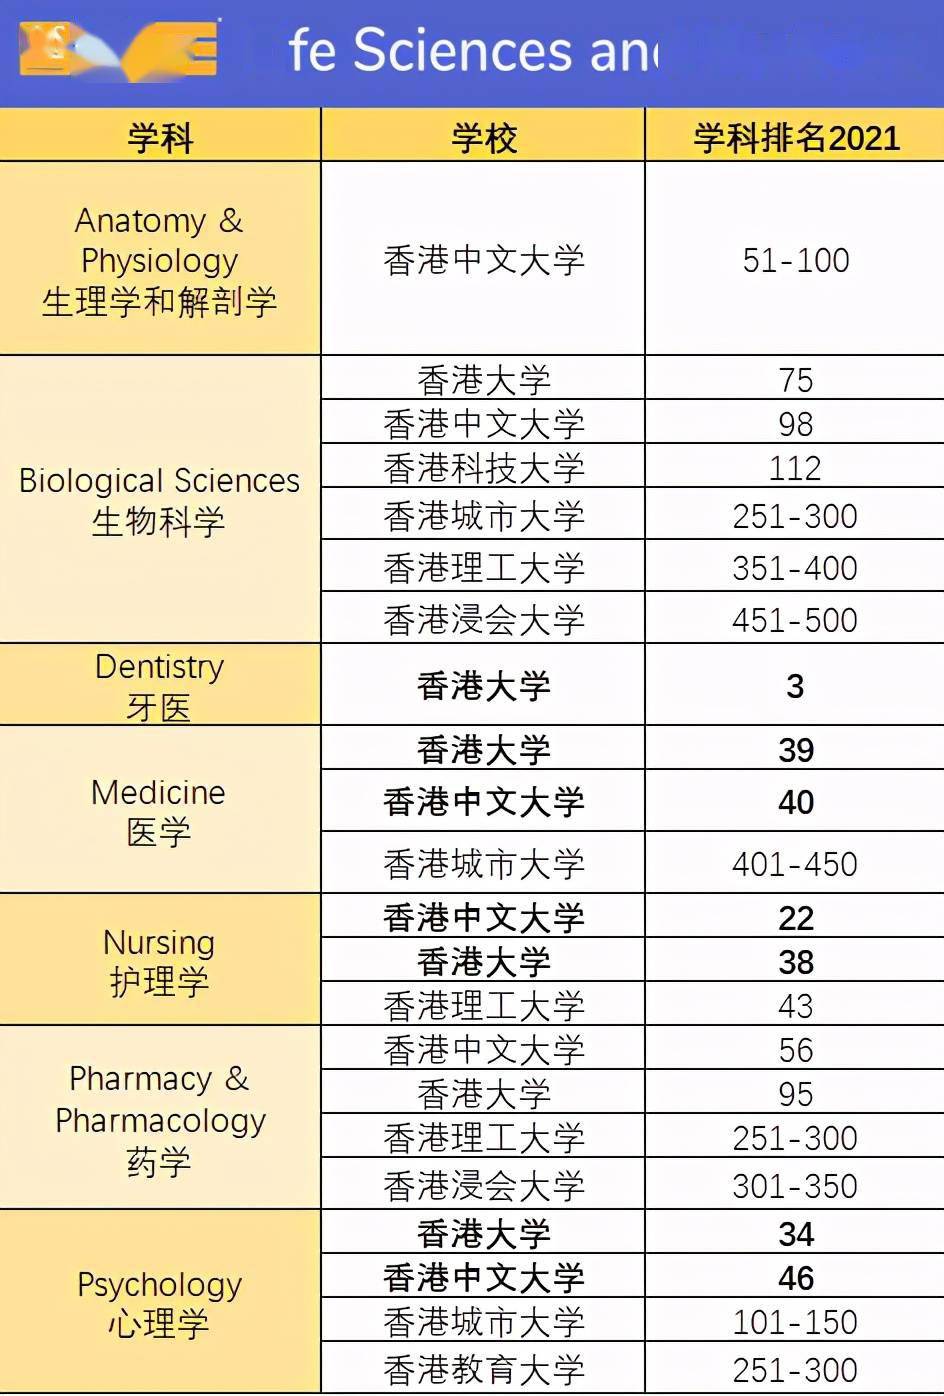 香港留学 | 2021年qs世界大学学科排名